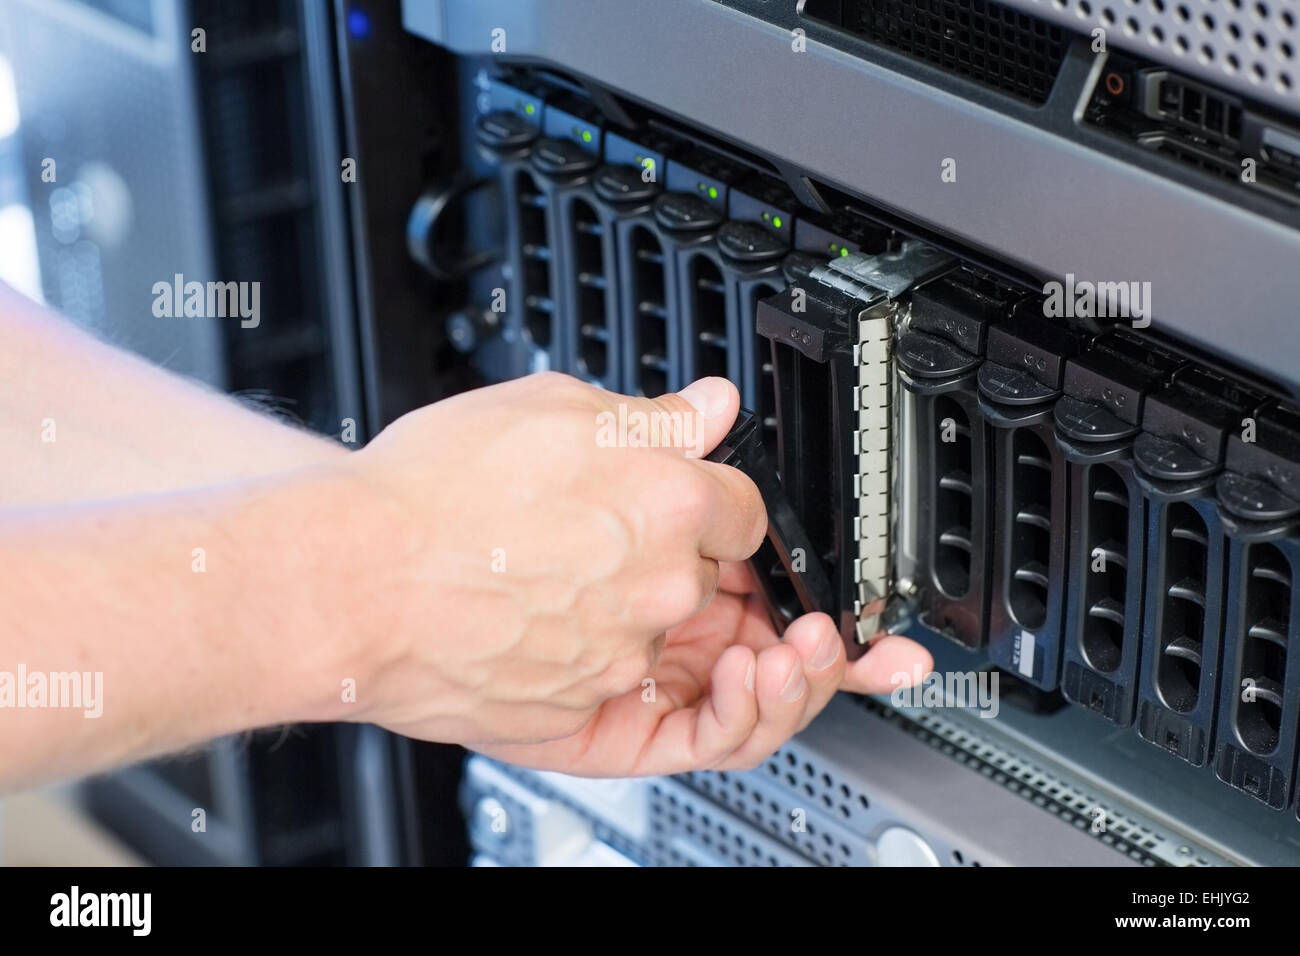 IT-Ingenieur / Techniker arbeiten in einem Rechenzentrum. Festplatte Gehäuse und Servern. Stockfoto